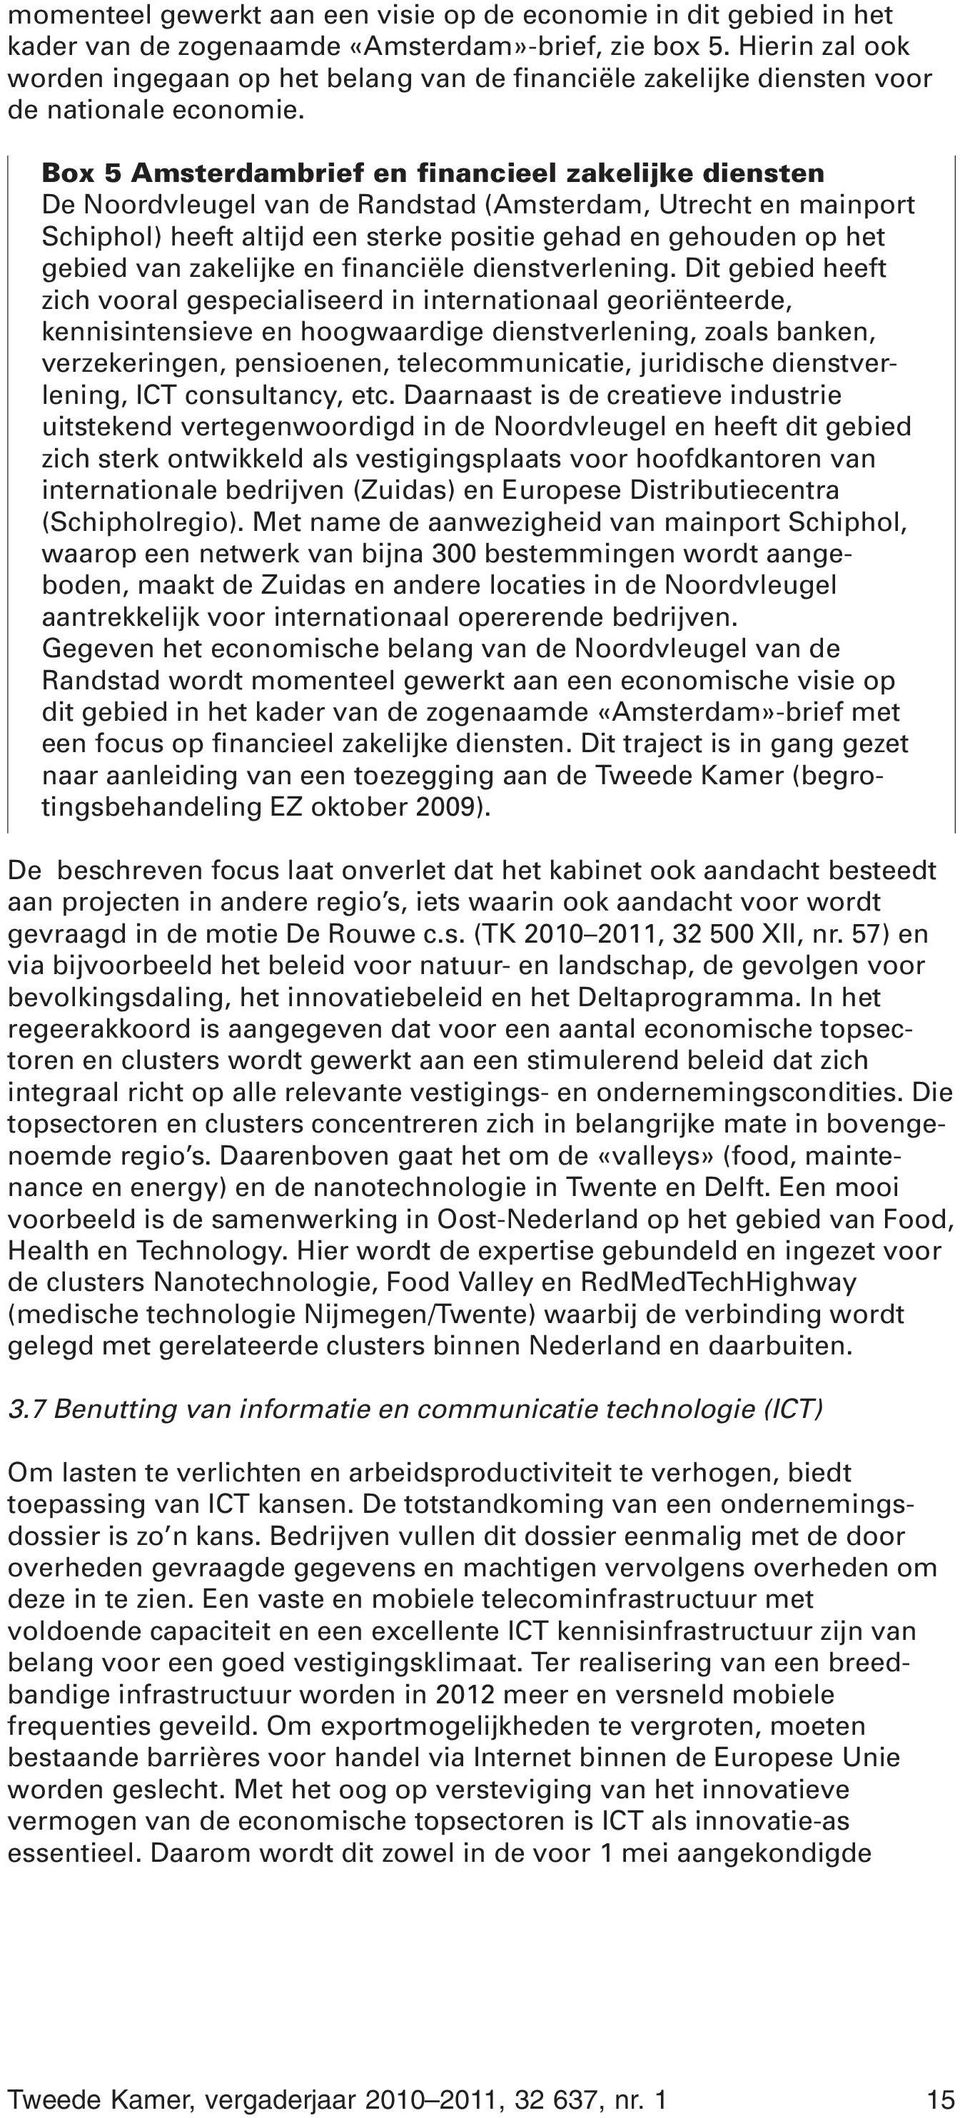 Box 5 Amsterdambrief en financieel zakelijke diensten De Noordvleugel van de Randstad (Amsterdam, Utrecht en mainport Schiphol) heeft altijd een sterke positie gehad en gehouden op het gebied van